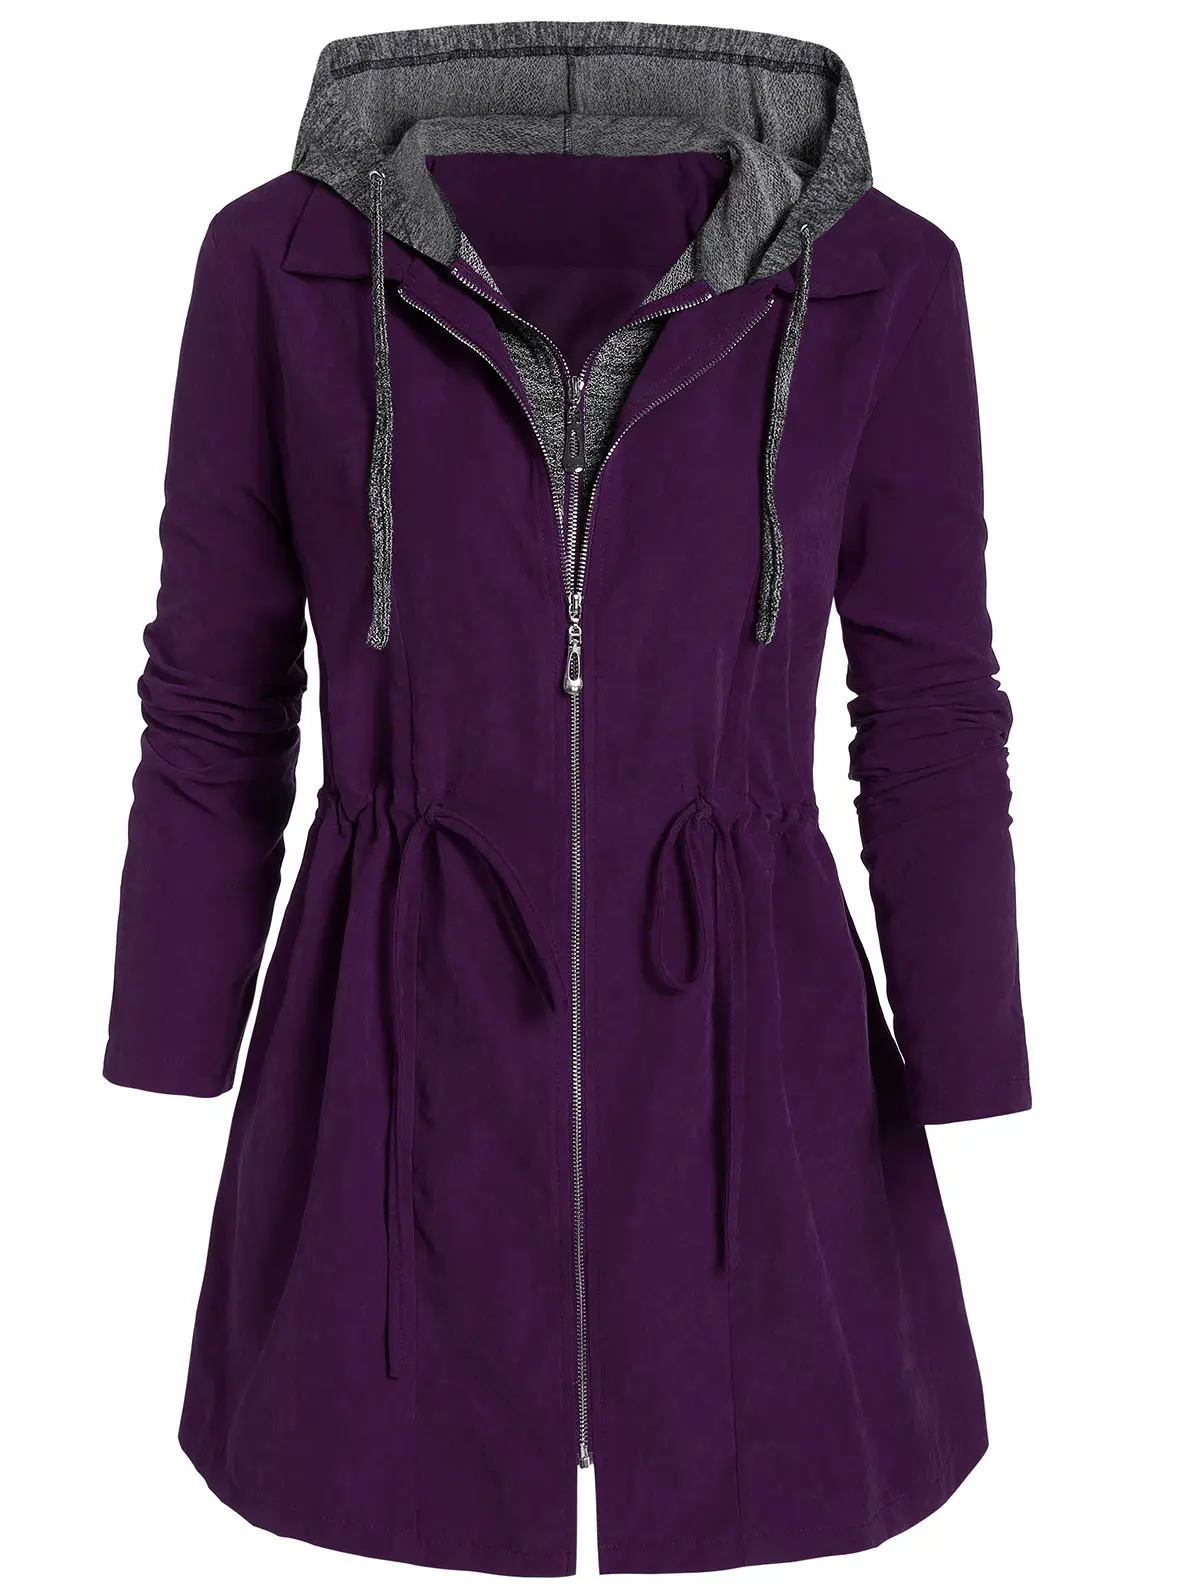 ROSEGAL плюс размер Marled панель туника с капюшоном пальто для женщин молния Fly Space цветное пальто высокие куртки до талии Осень Зима